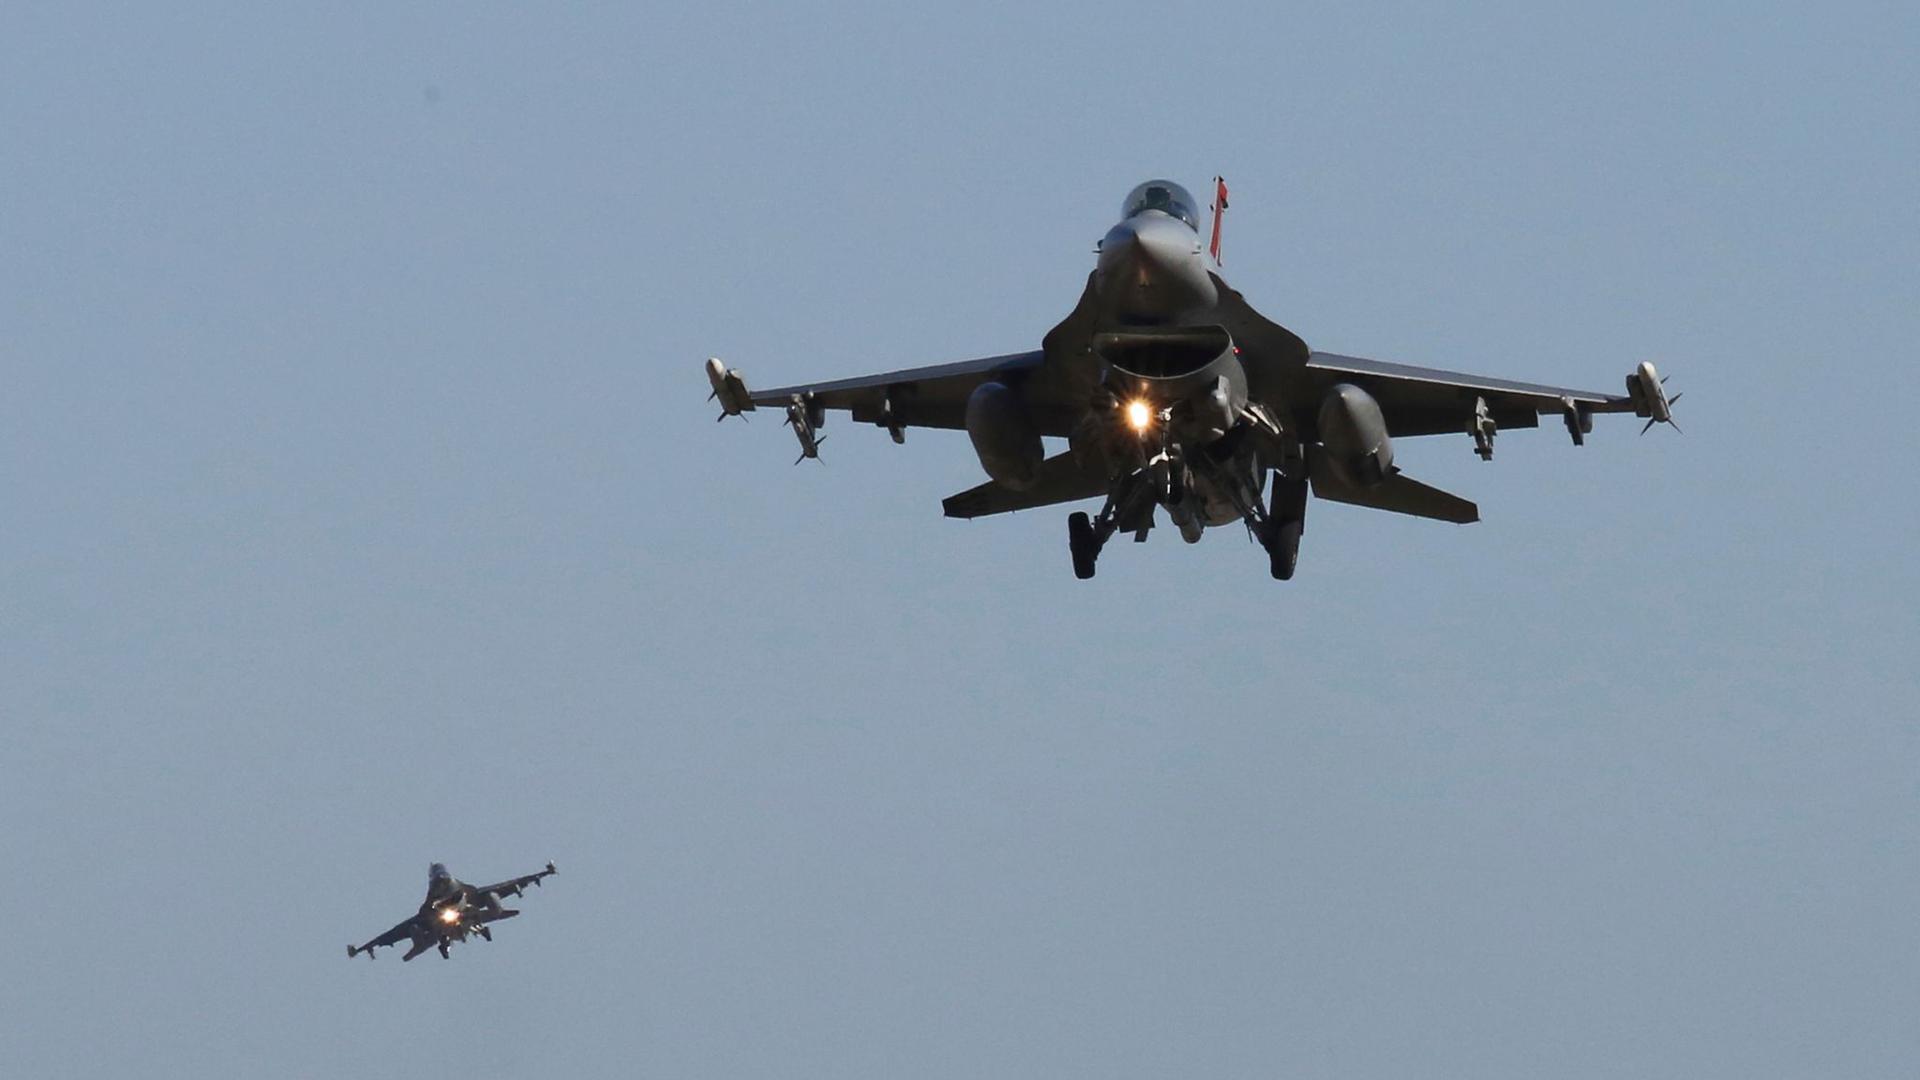 F-16-Kampfjets der US-Luftwaffe während einer Luftwaffenübung.